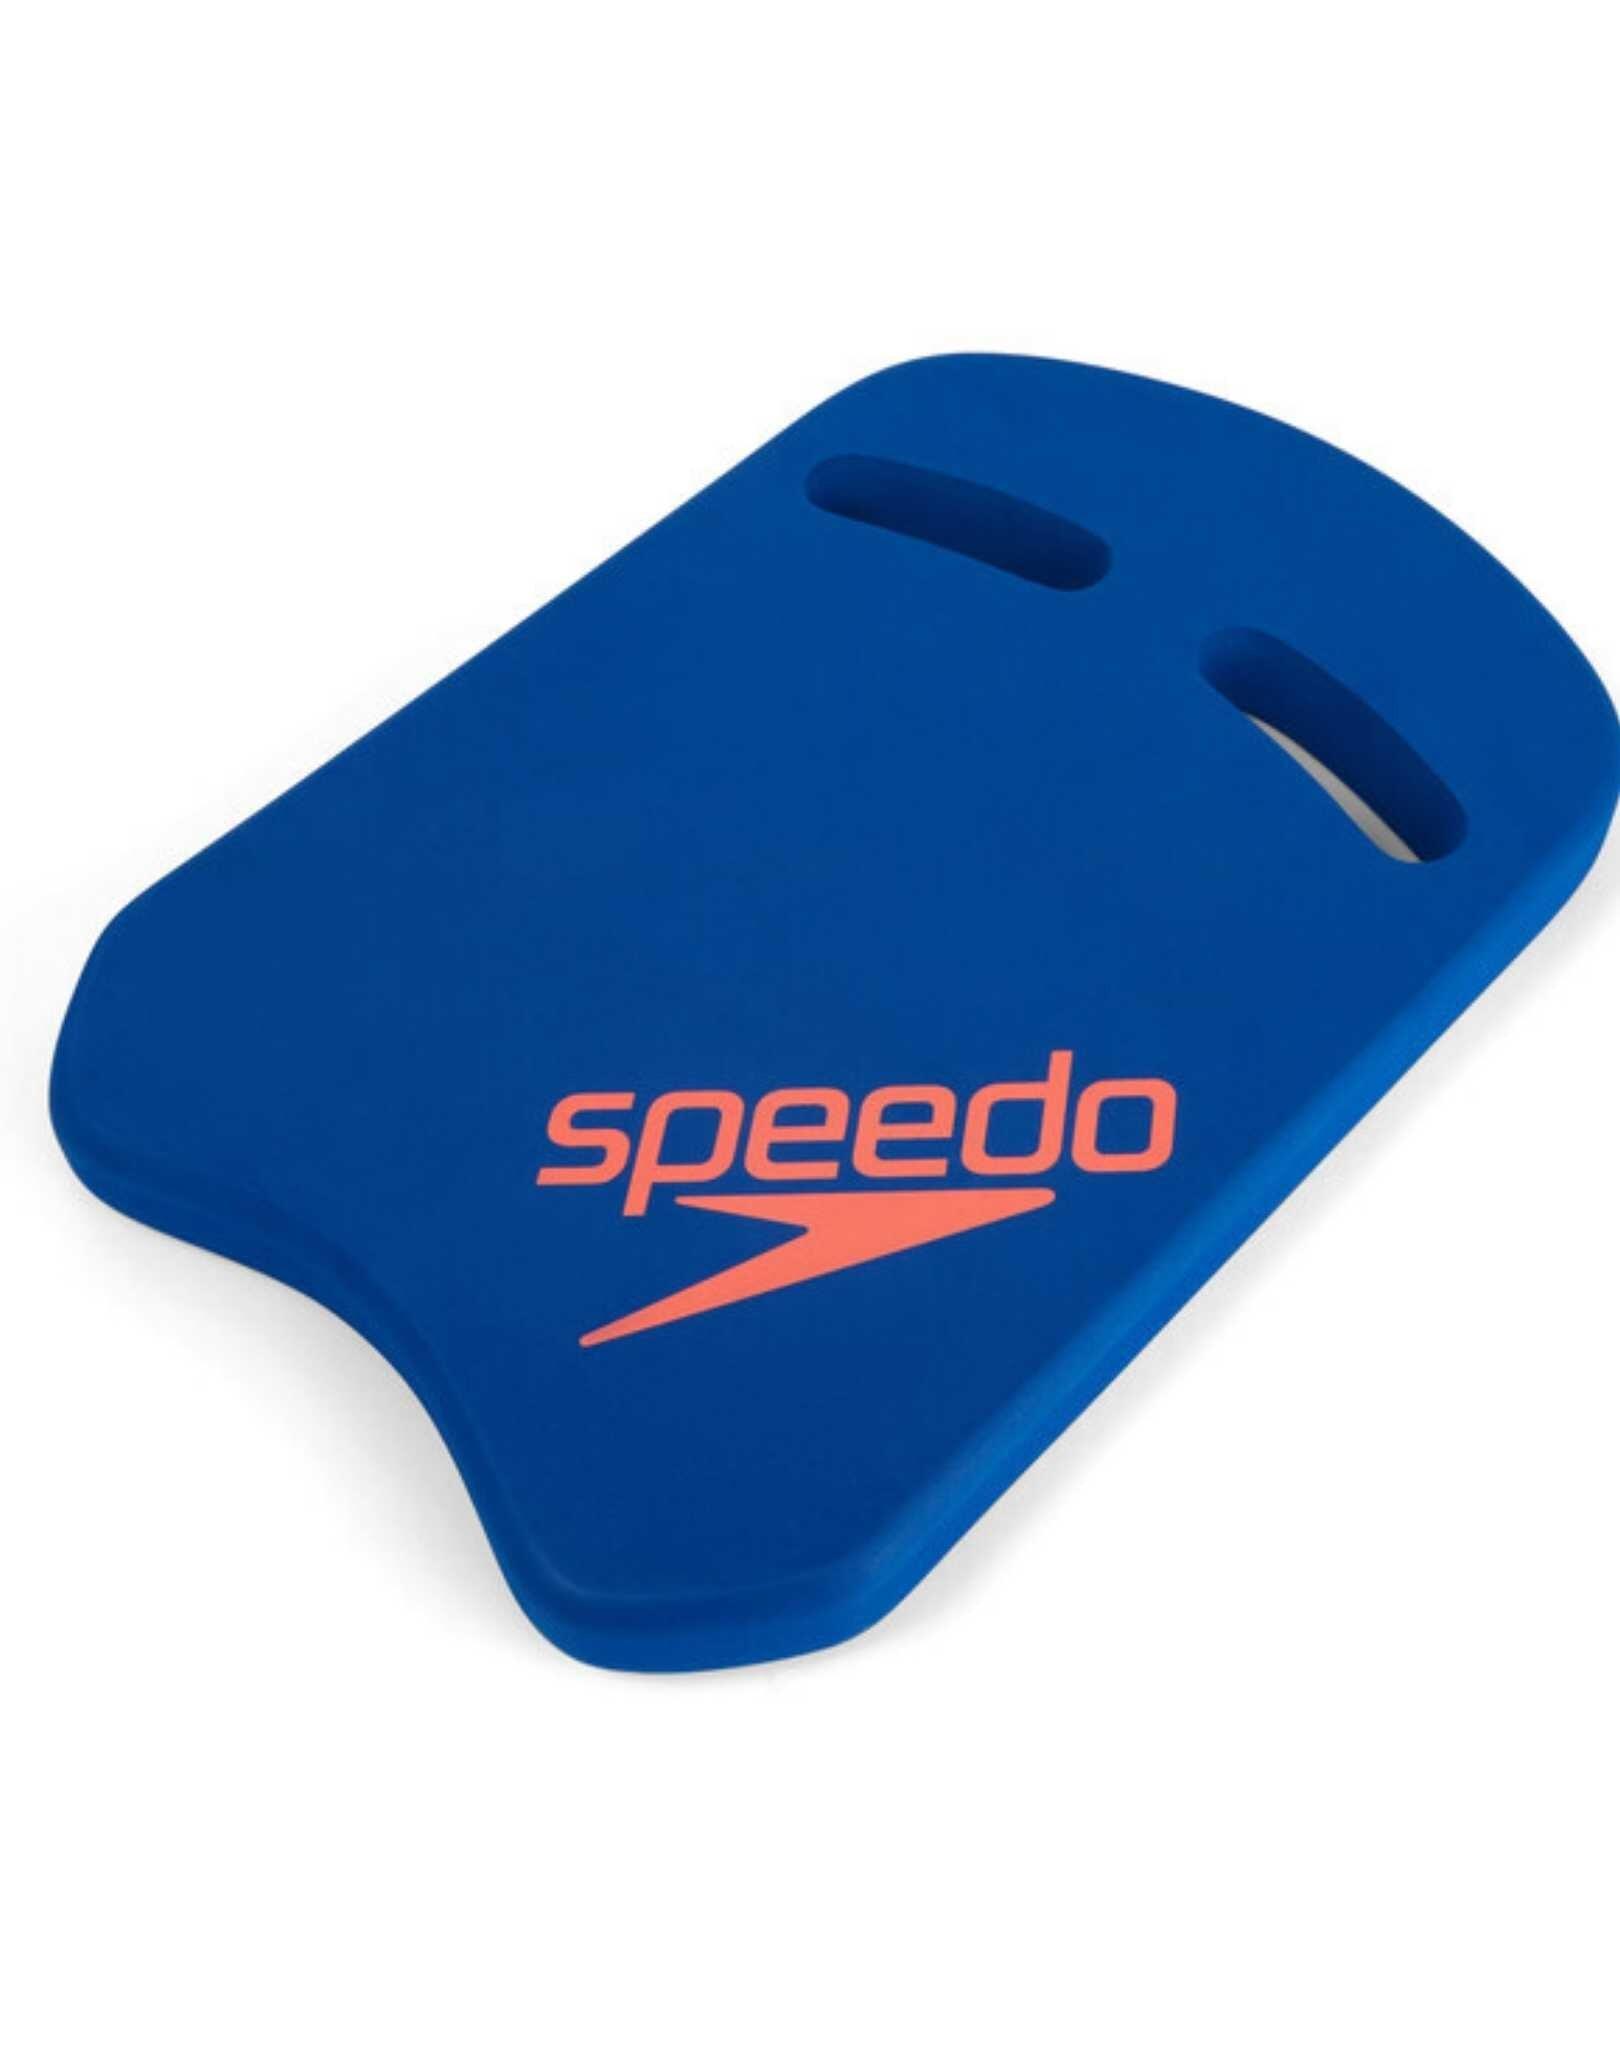 Speedo Kickboard - Blue / Orange 3/3